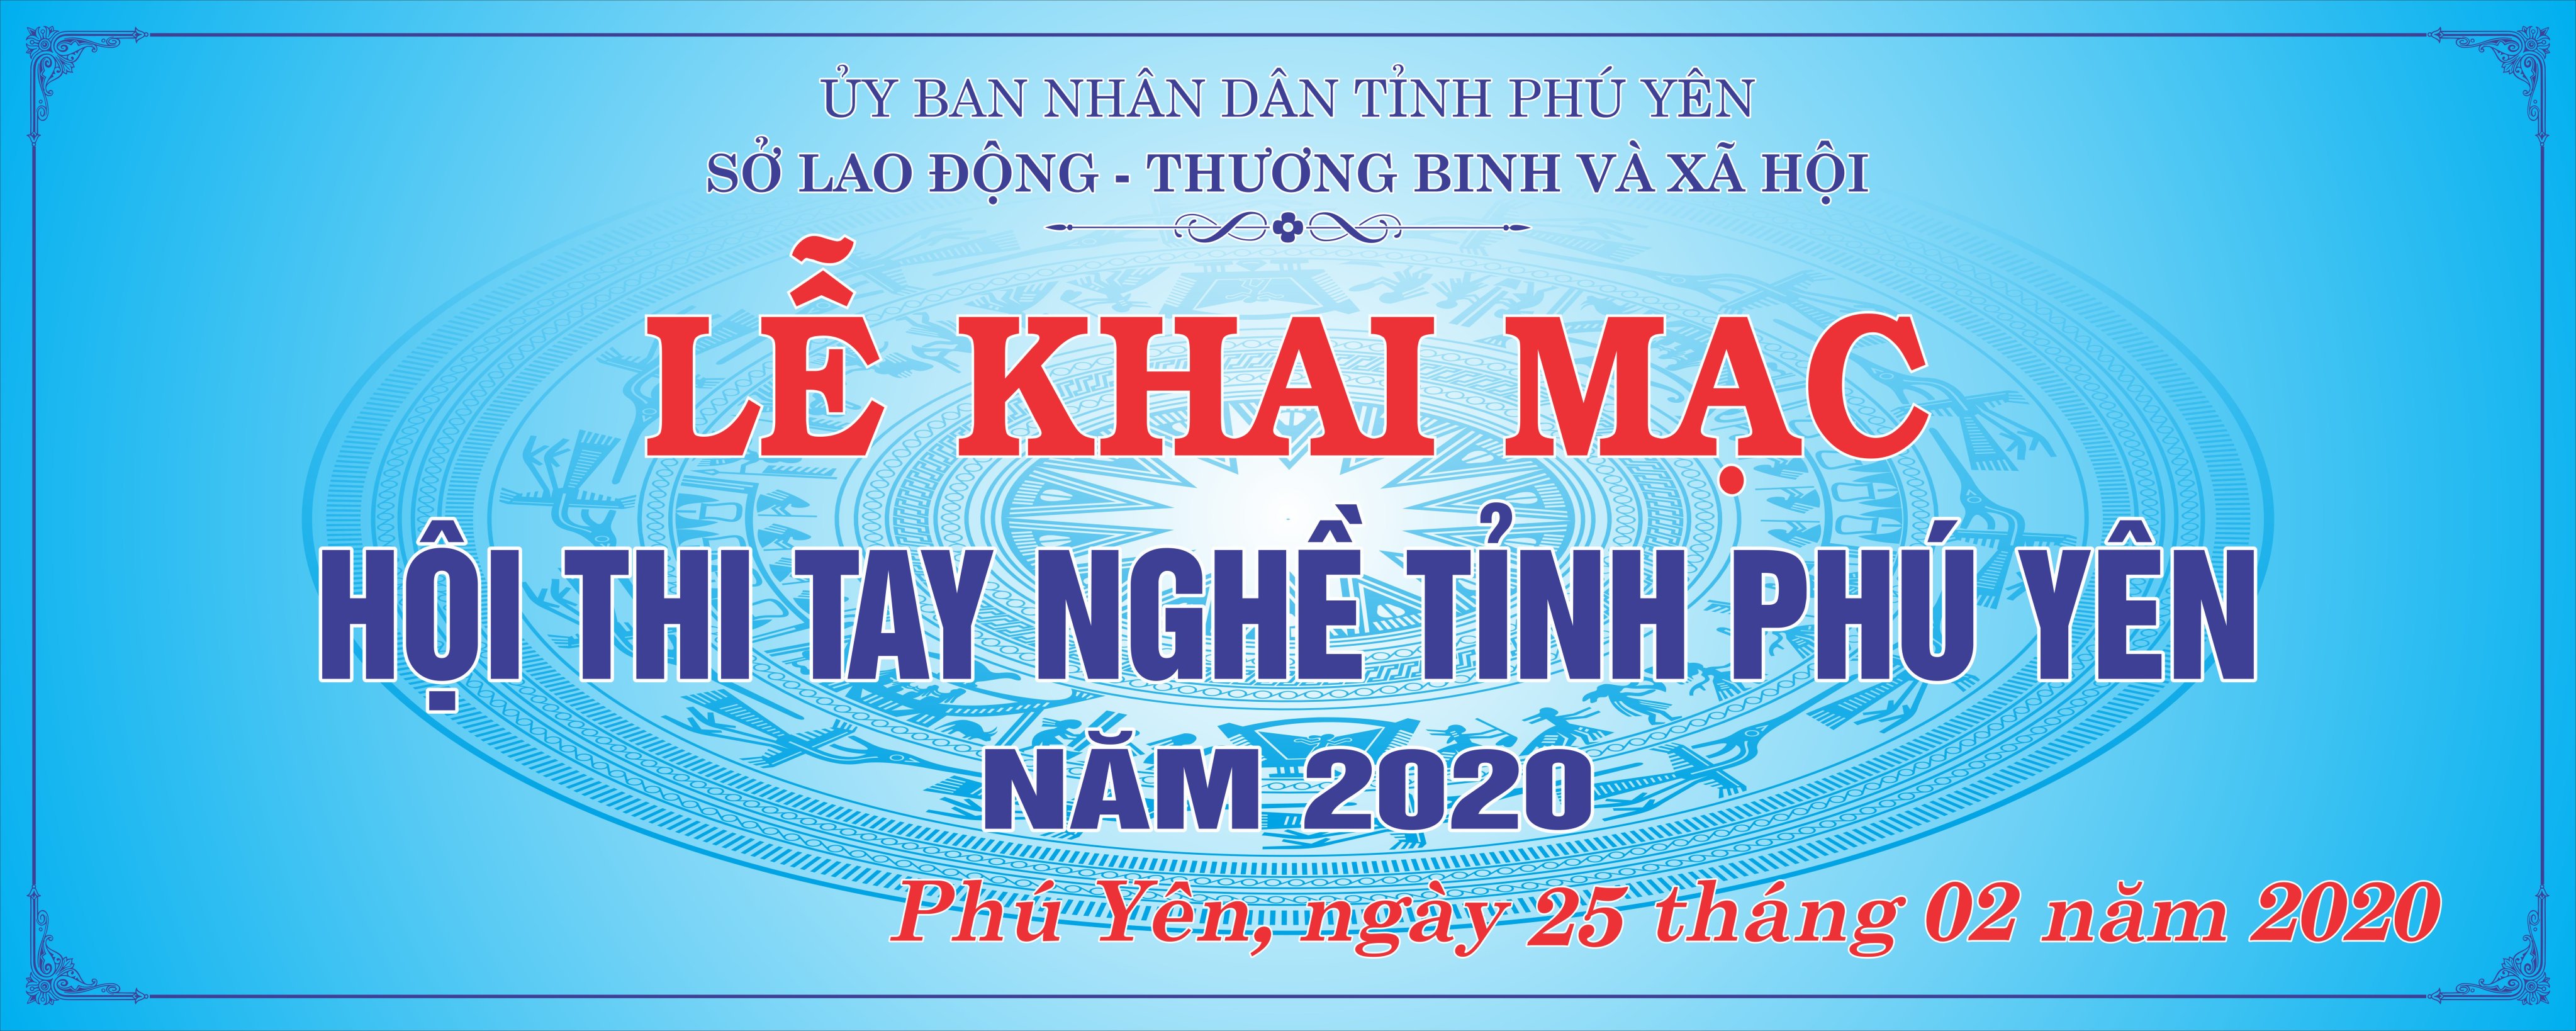 Khai mạc hội thi Tay nghề tỉnh Phú Yên năm 2020